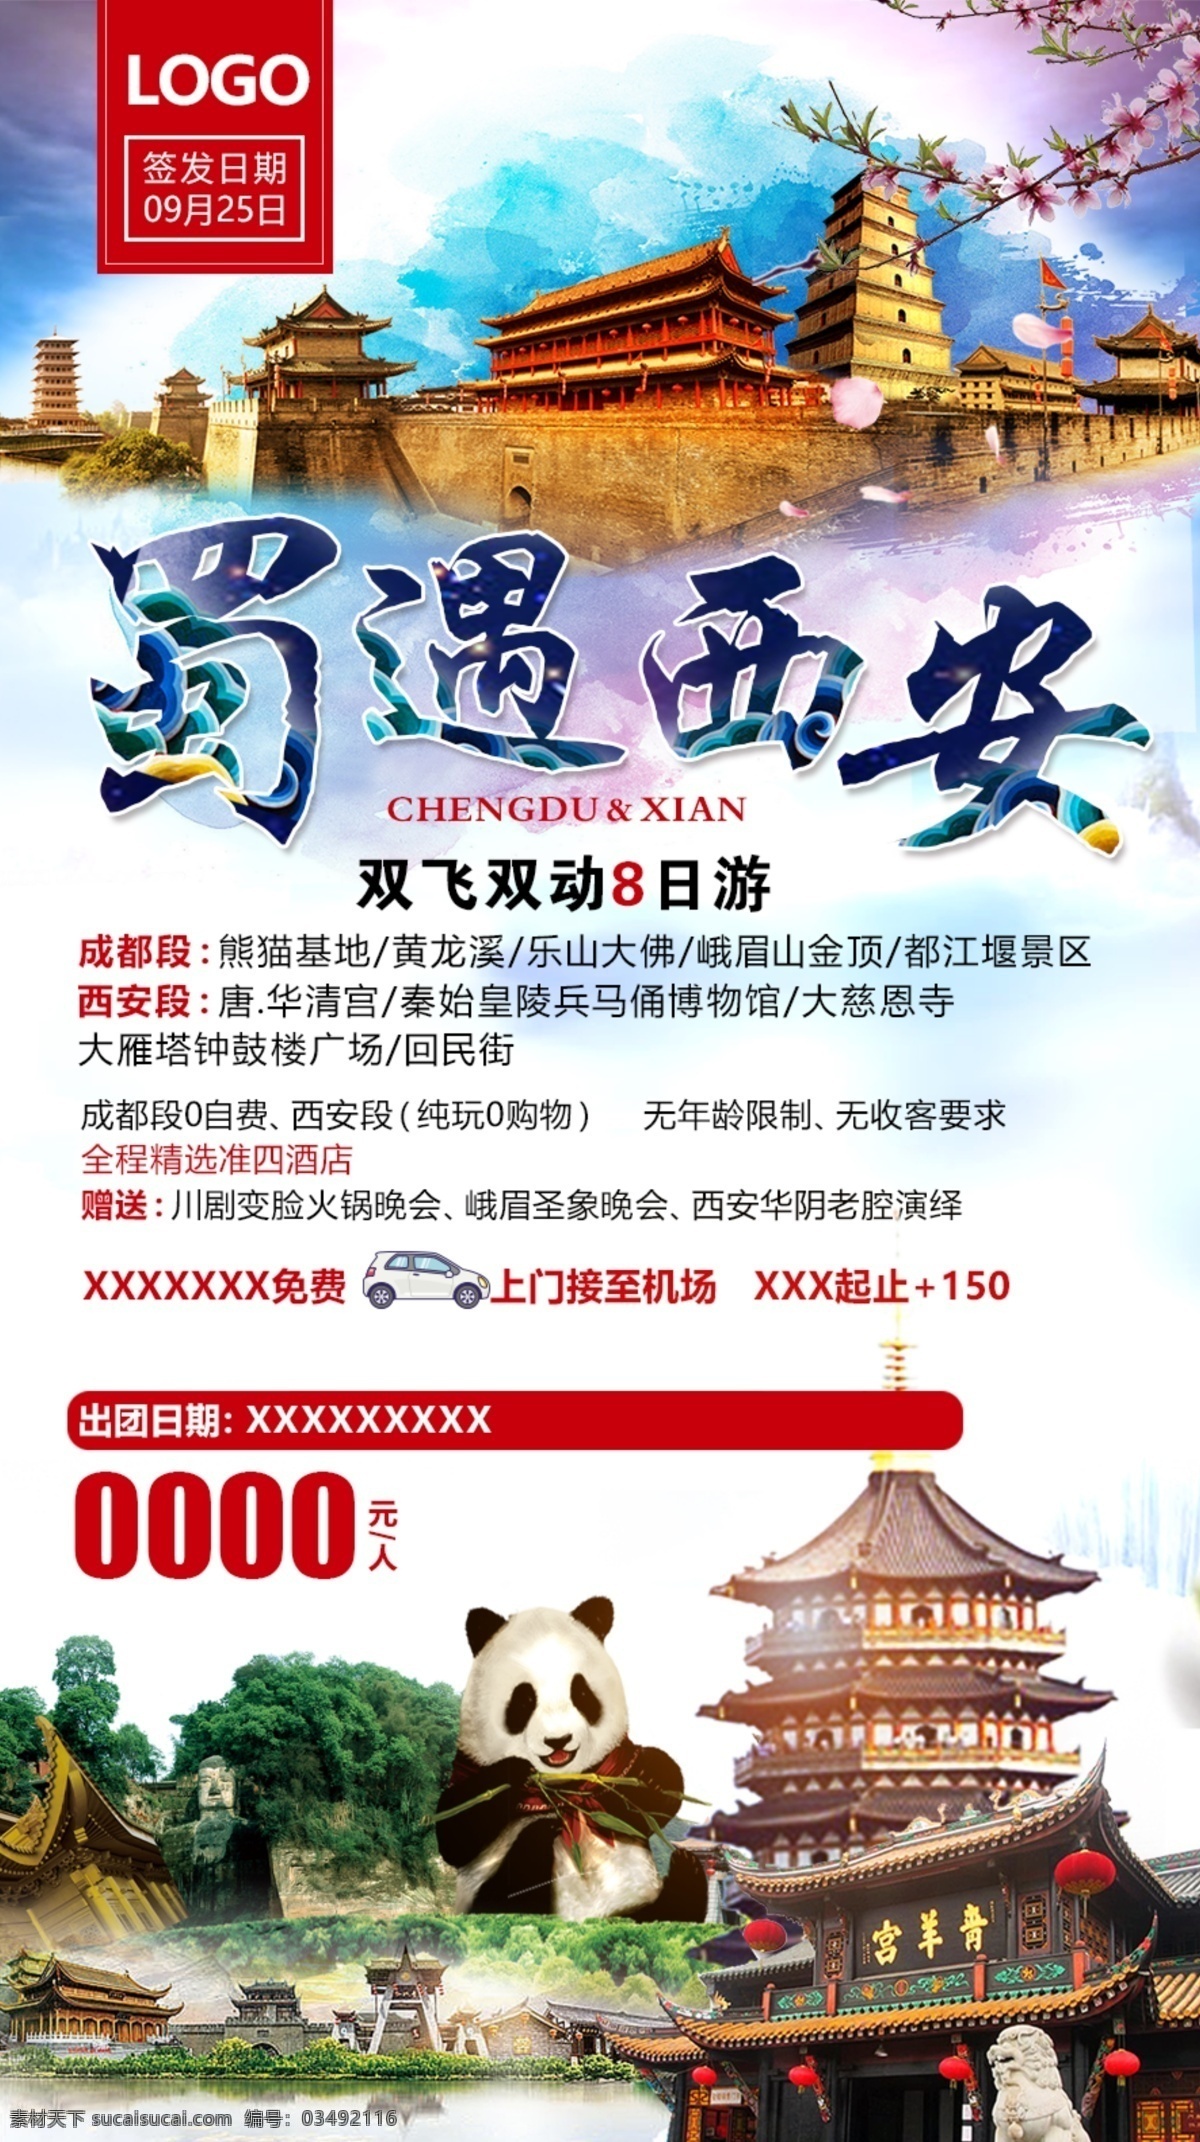 蜀遇西安 四川 熊猫 西安 旅游海报 旅游宣传 旅游朋友圈